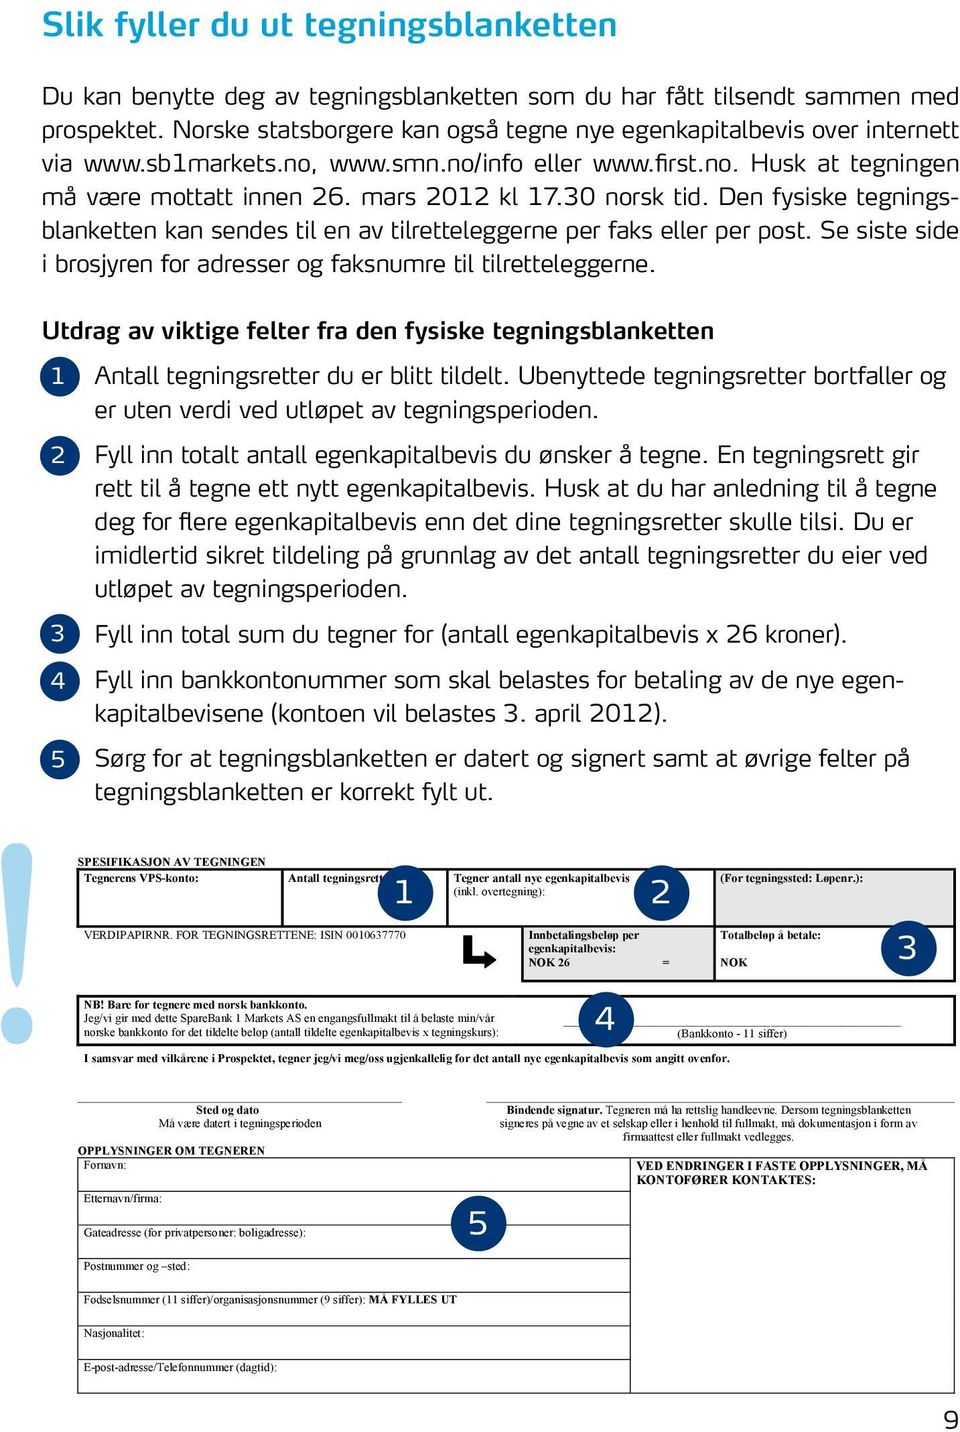 30 norsk tid. Den fysiske tegningsblanketten SpareBank 1 kan SMN sendes til en av TEGNINGSBLANKETT tilretteleggerne per faks eller per post.